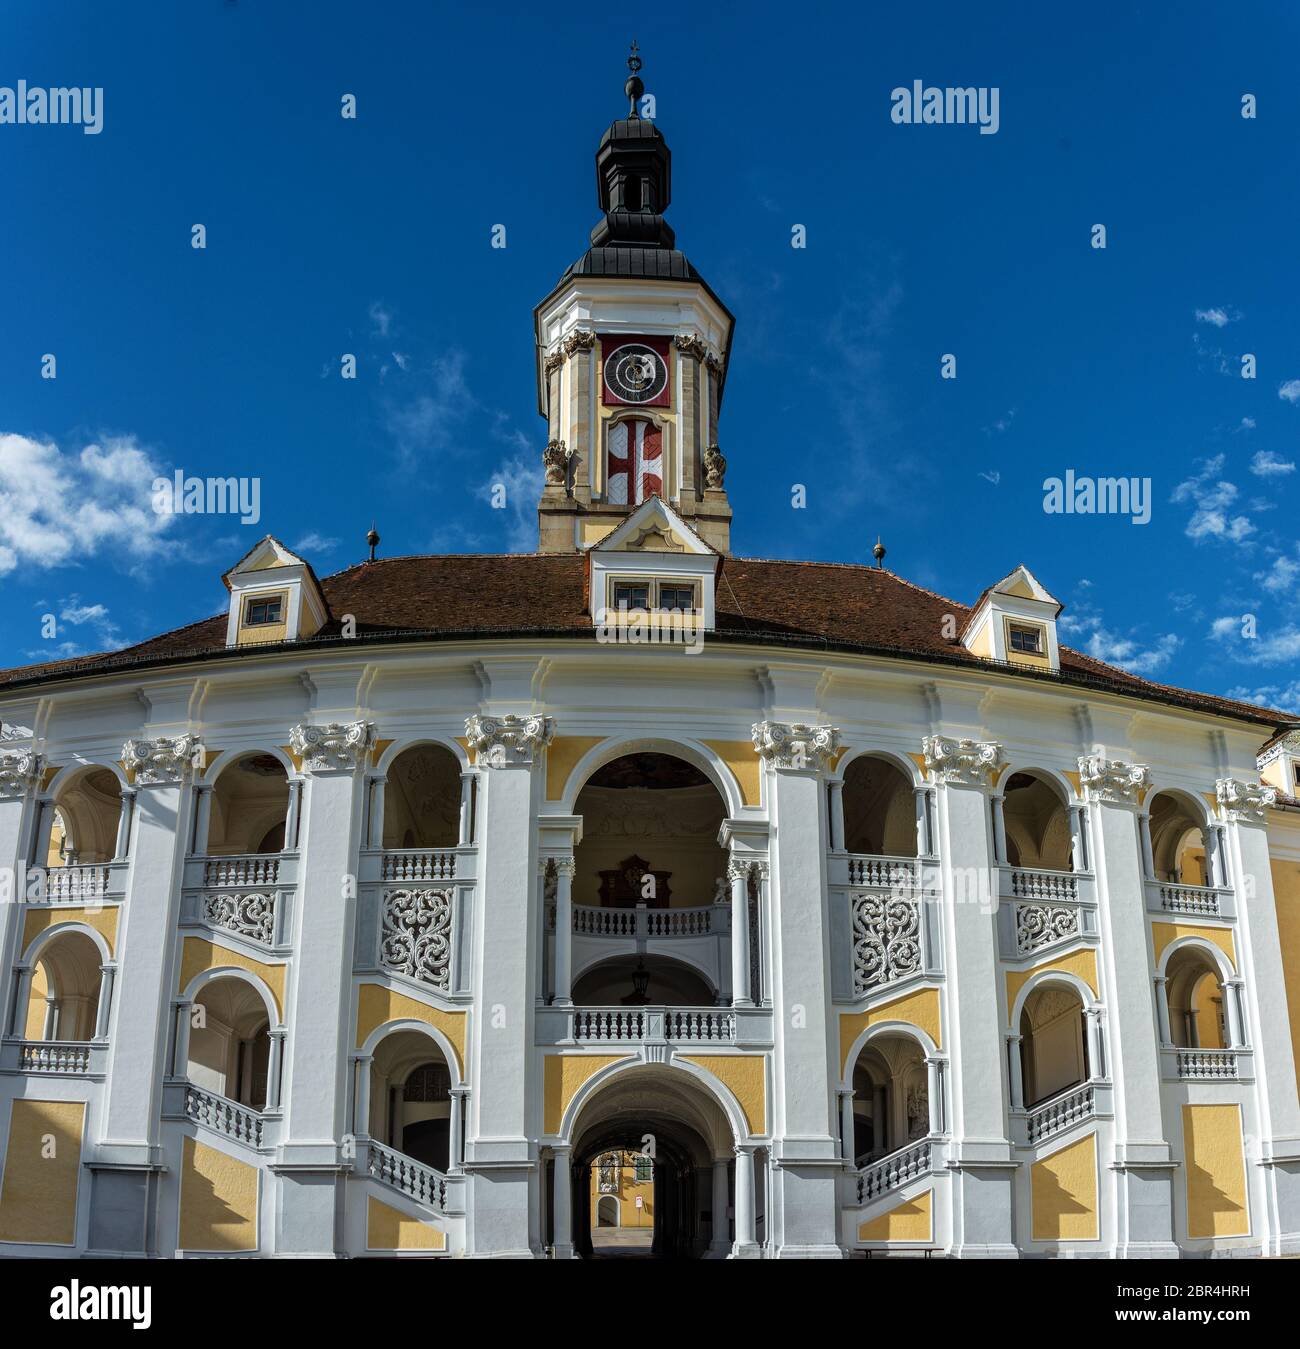 Impressioni e dettagli del Monastero di San Florian in alta Austria, vicino Linz Foto Stock